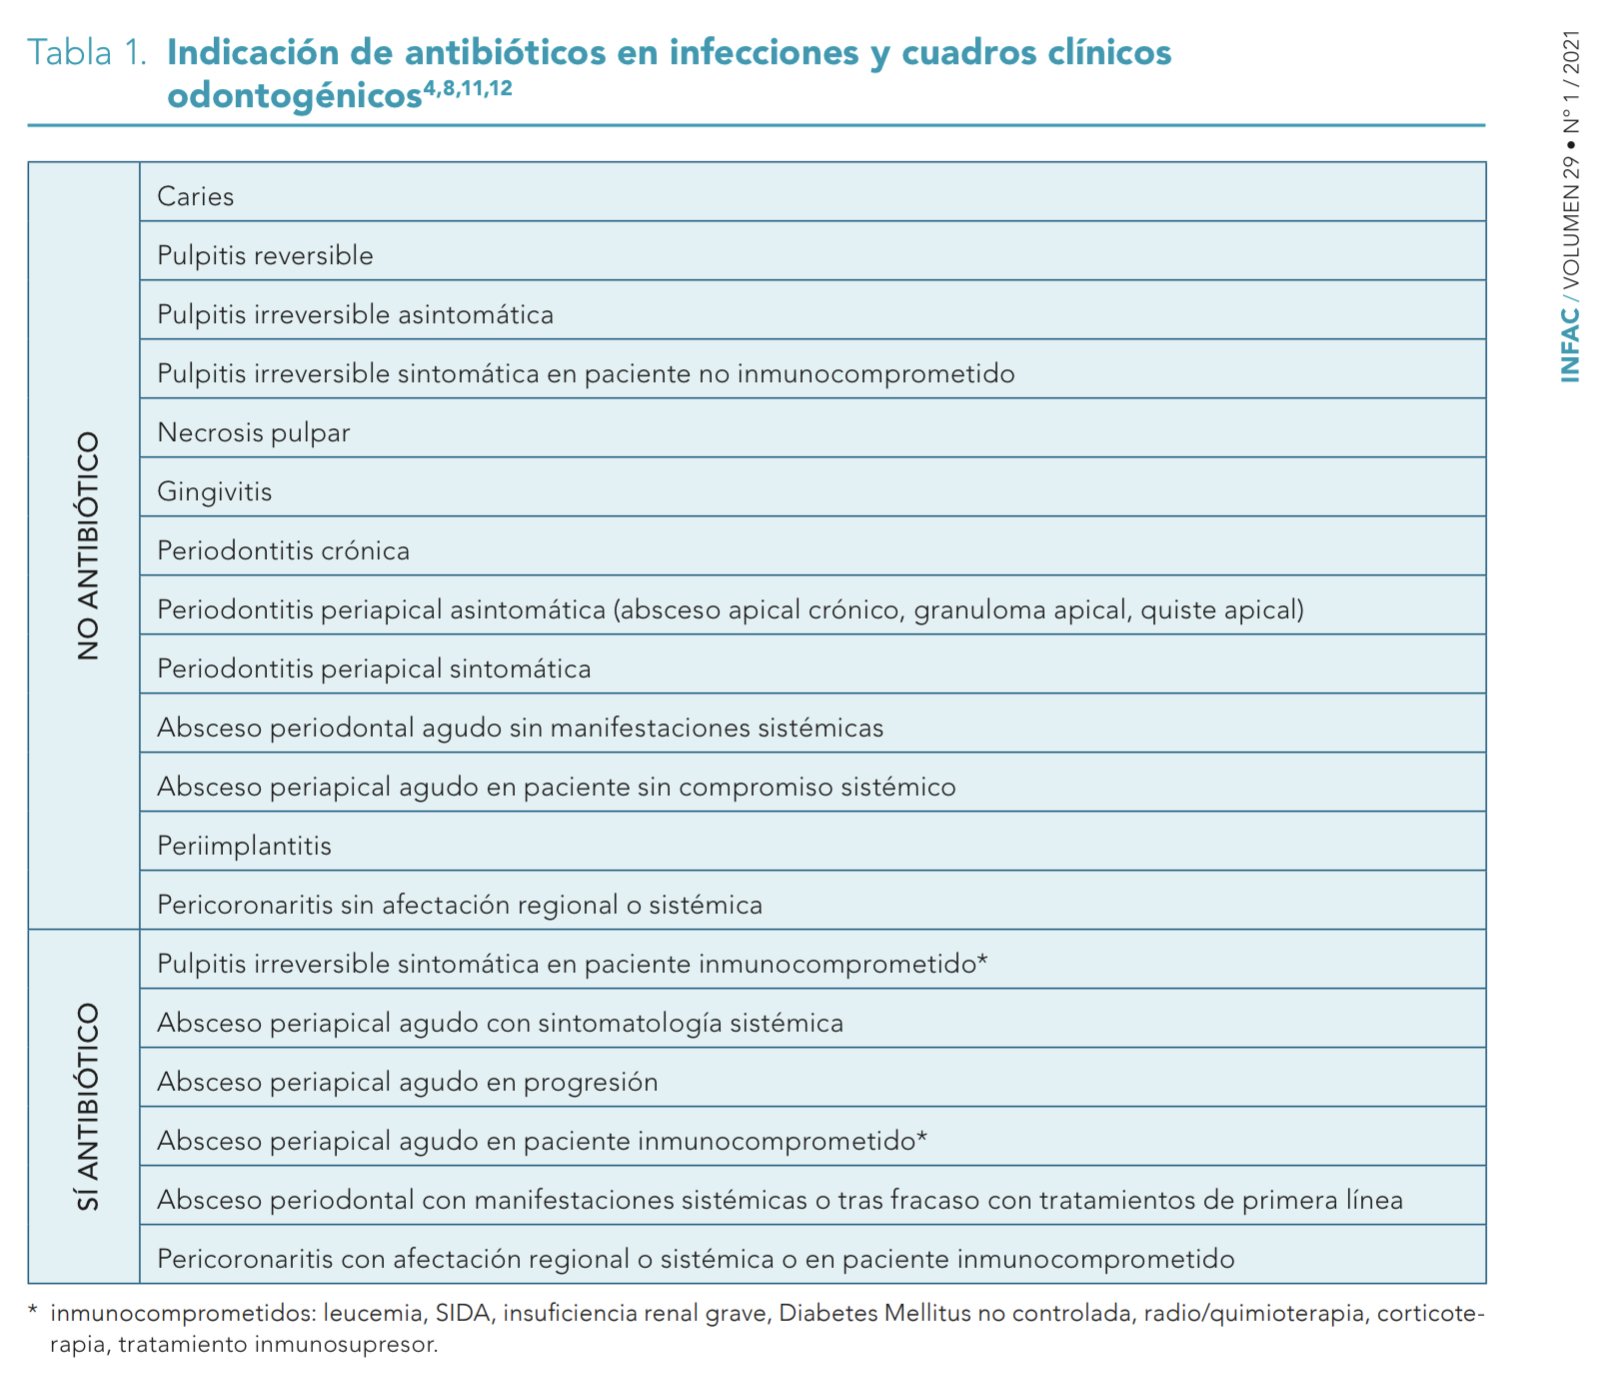 Antibioticos indicacion INFAC 2021